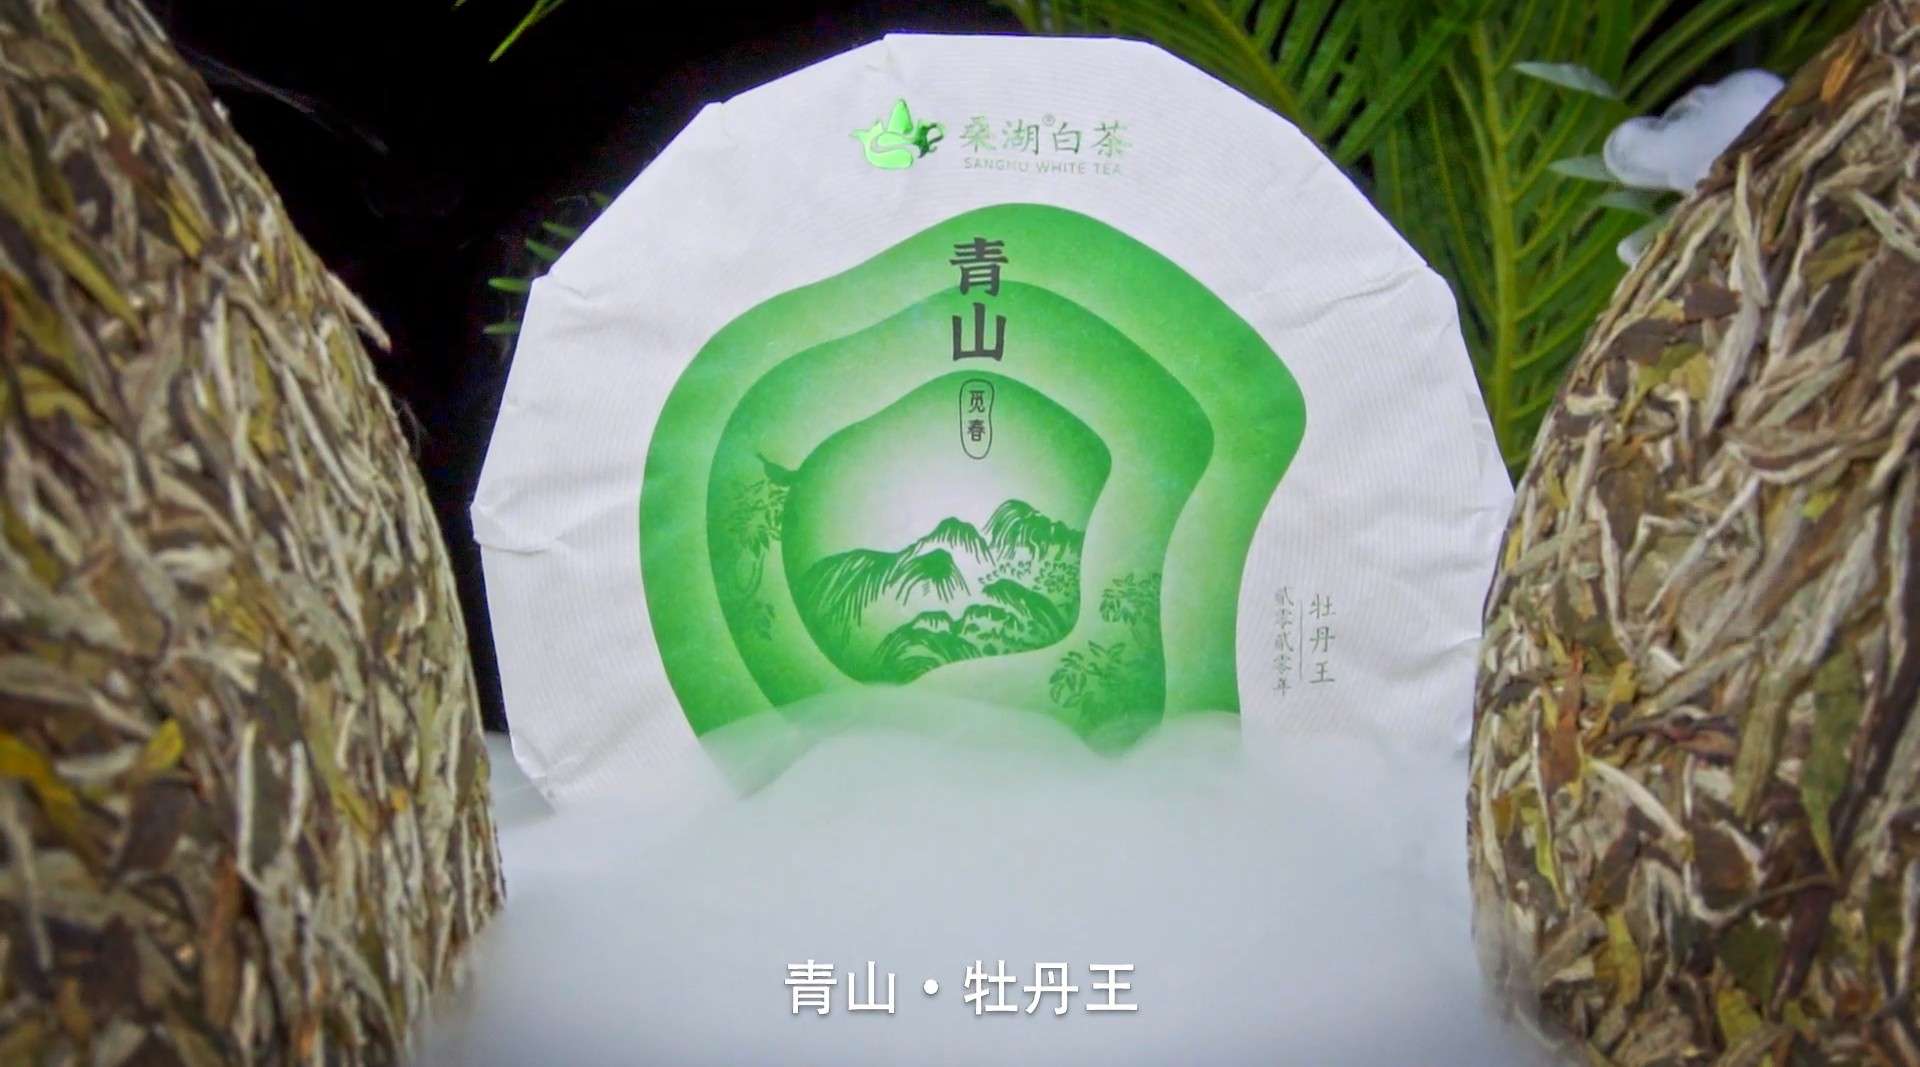 桑湖白茶·青山-产品视频-茶叶视频-福鼎白茶